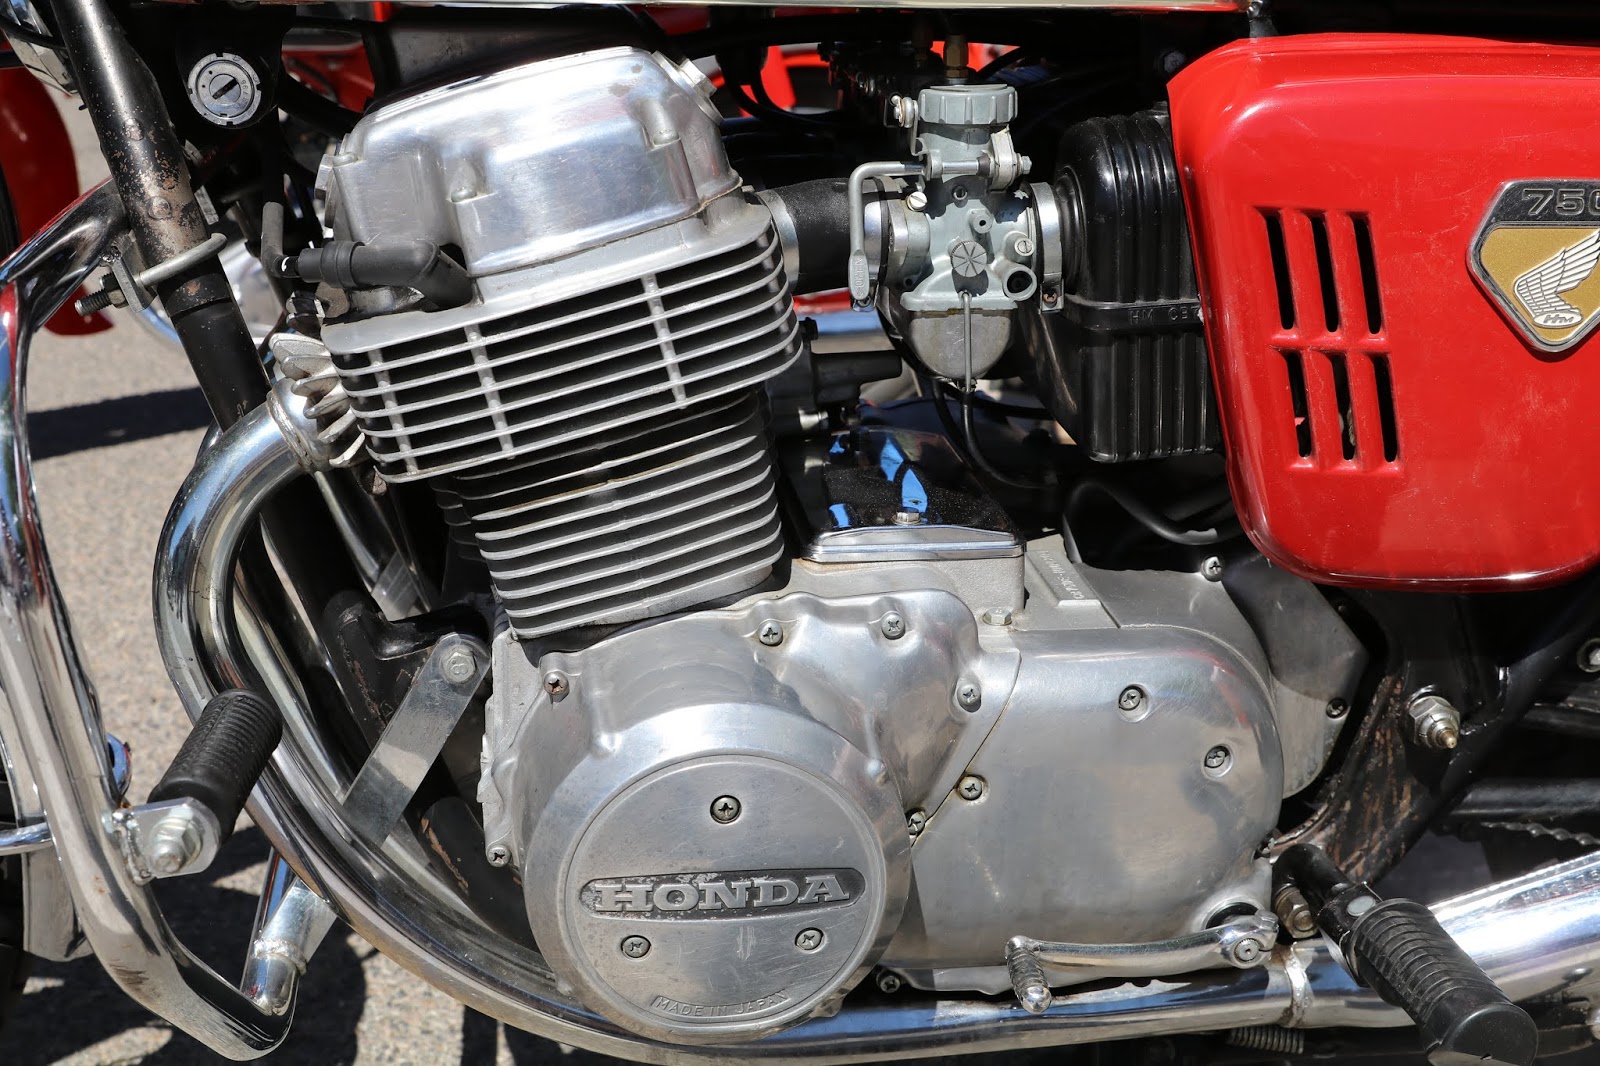 OldMotoDude: 1969 Honda 750 K0 with sandcast engine on display at the